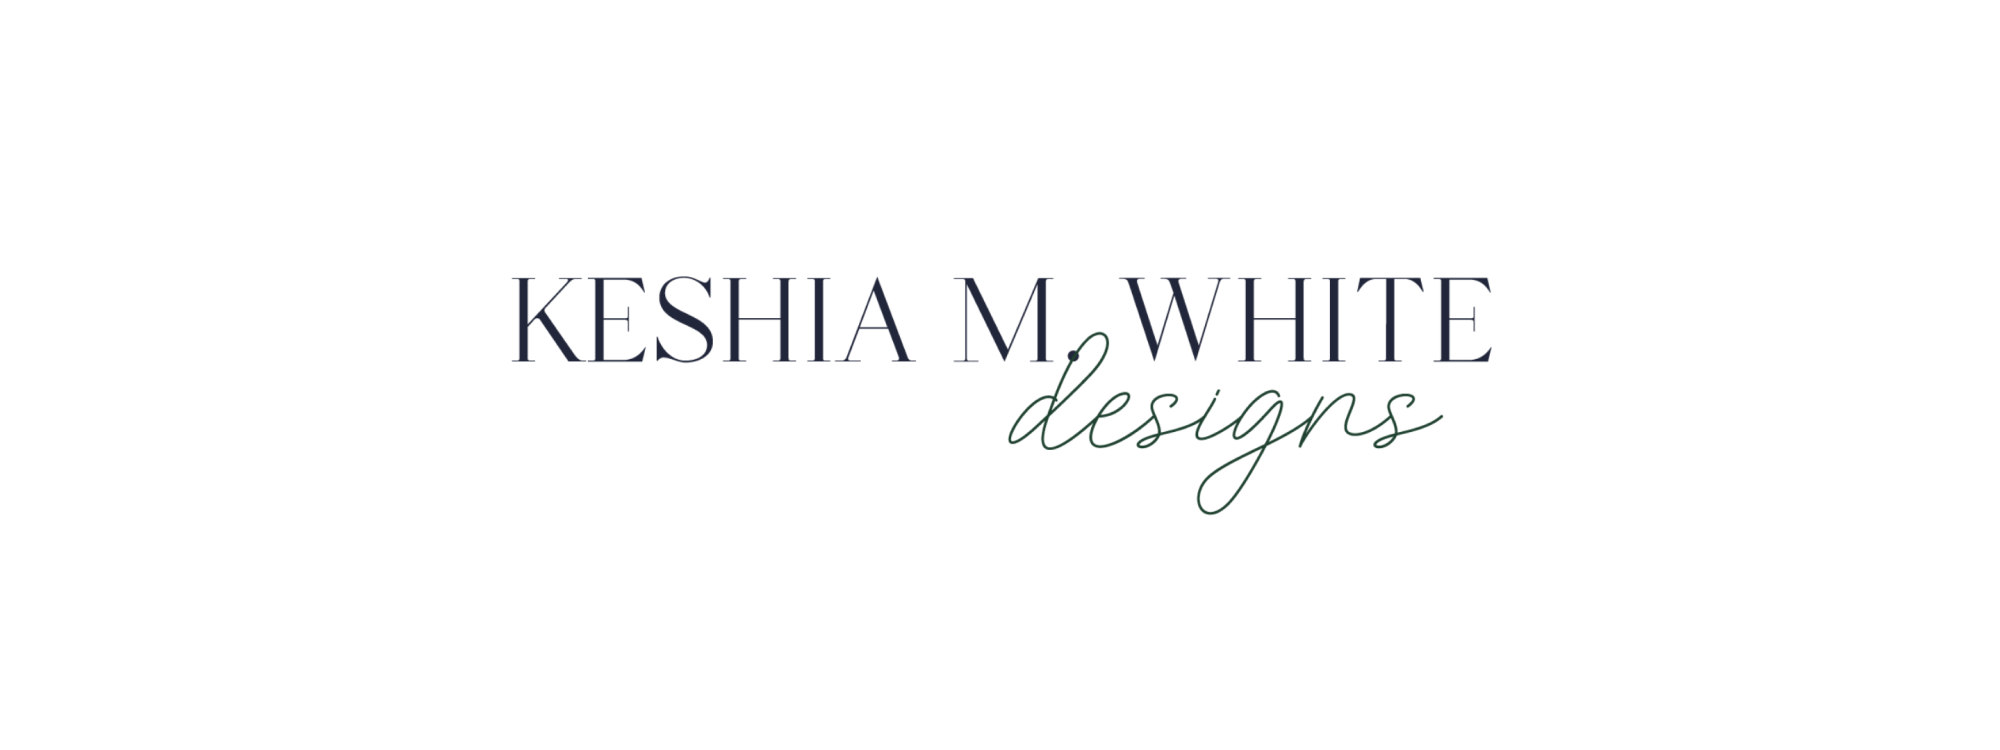 Keshia M. White Designs